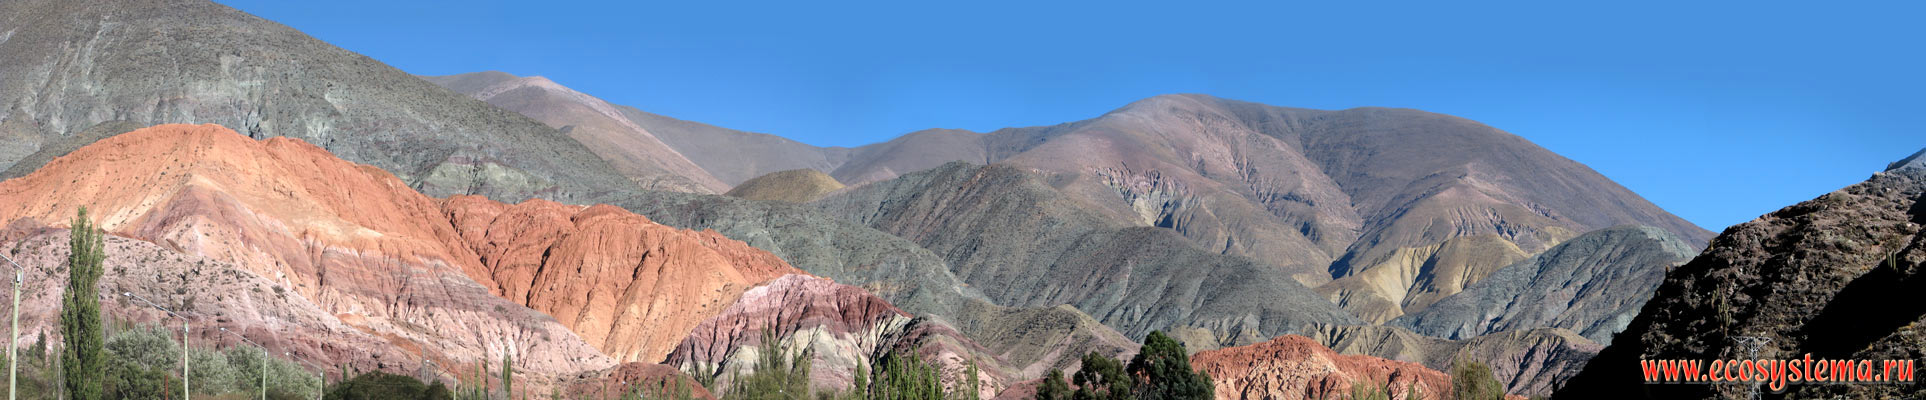 Панорама семицветных гор (Сиерра де Лос Сьете Колорес). Восточные склоны Андийского плоскогорья. Высота - около 1200 м н.у.м.
Прекордильеры, провинция Жужуй, северо-запад Аргентины недалеко от границы с Боливией